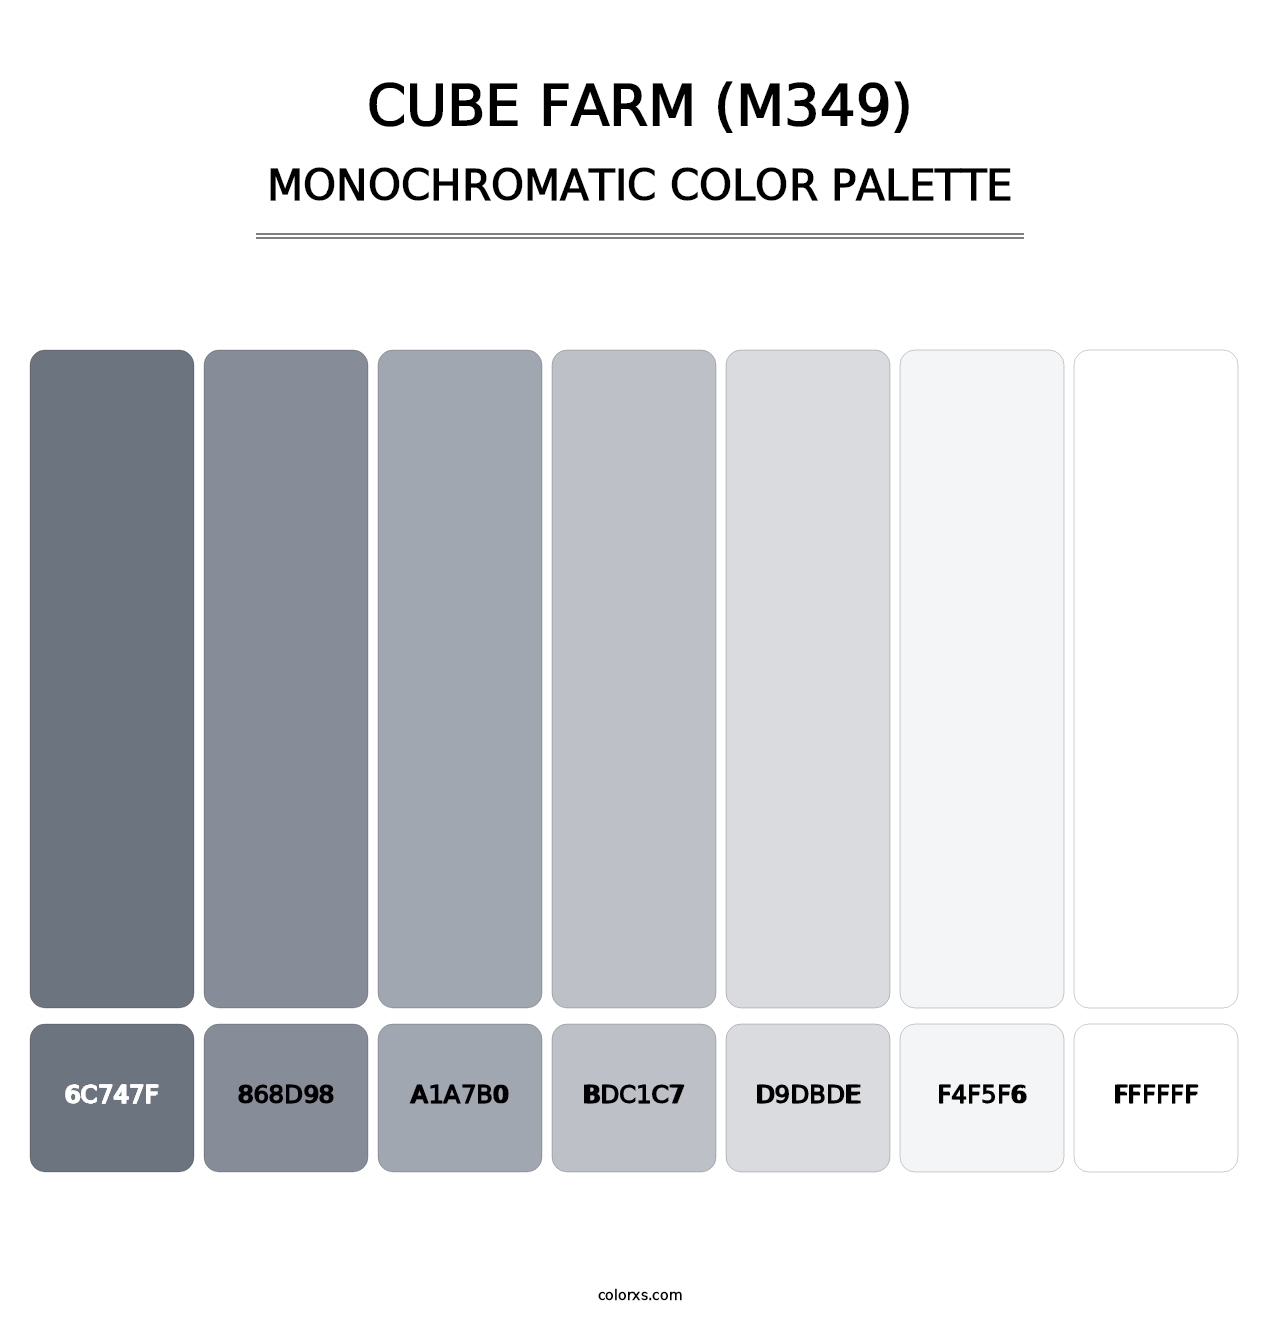 Cube Farm (M349) - Monochromatic Color Palette